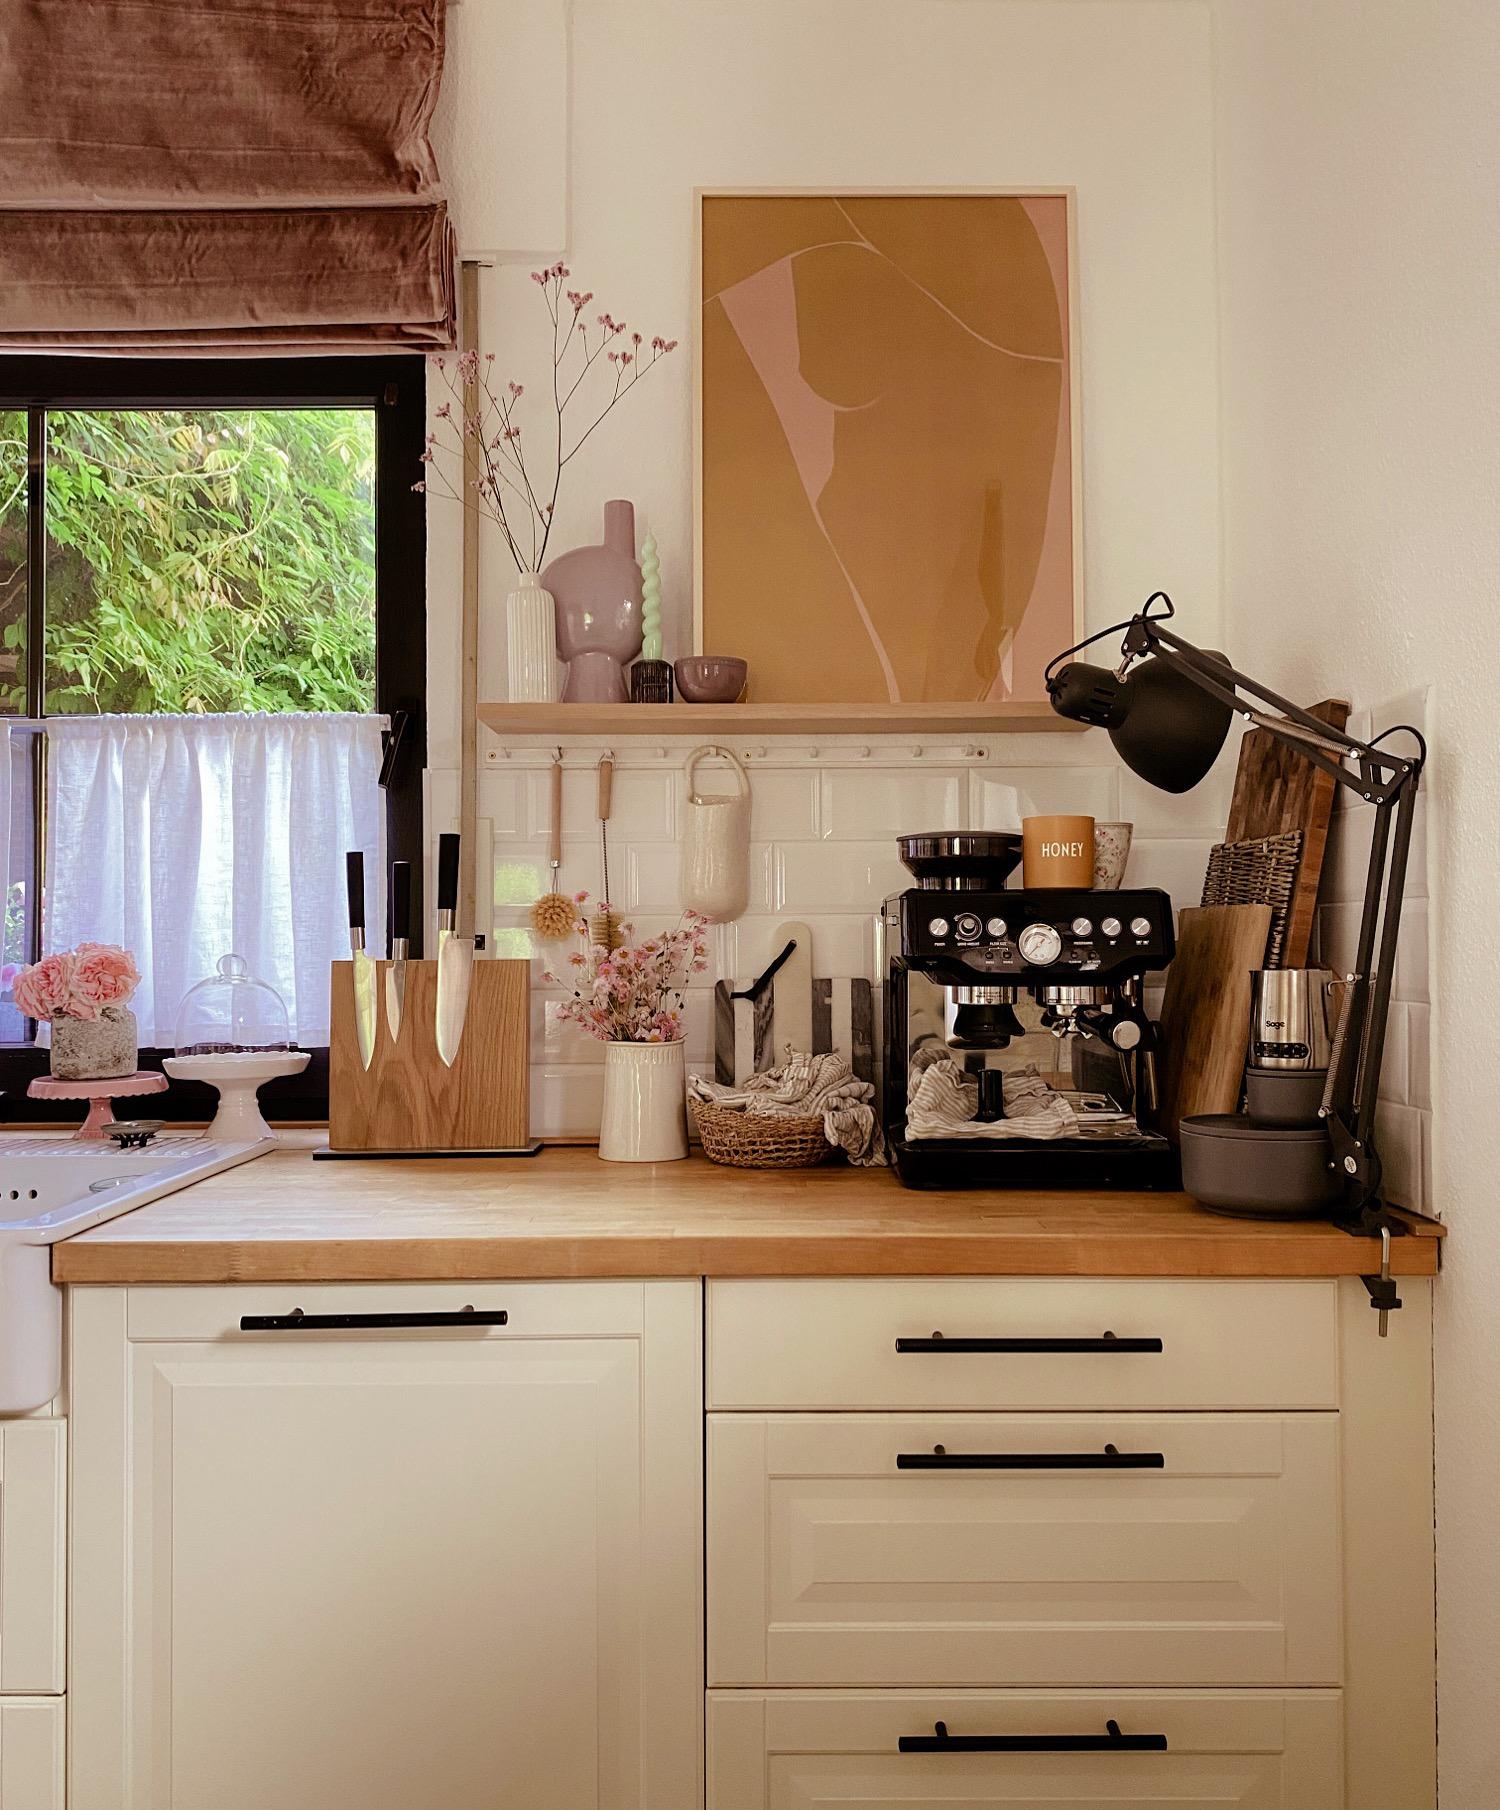 #kitchen#coffeelover#shelfie#kitchendecor#landhaus#küchenkonfetti#kücheninspiration